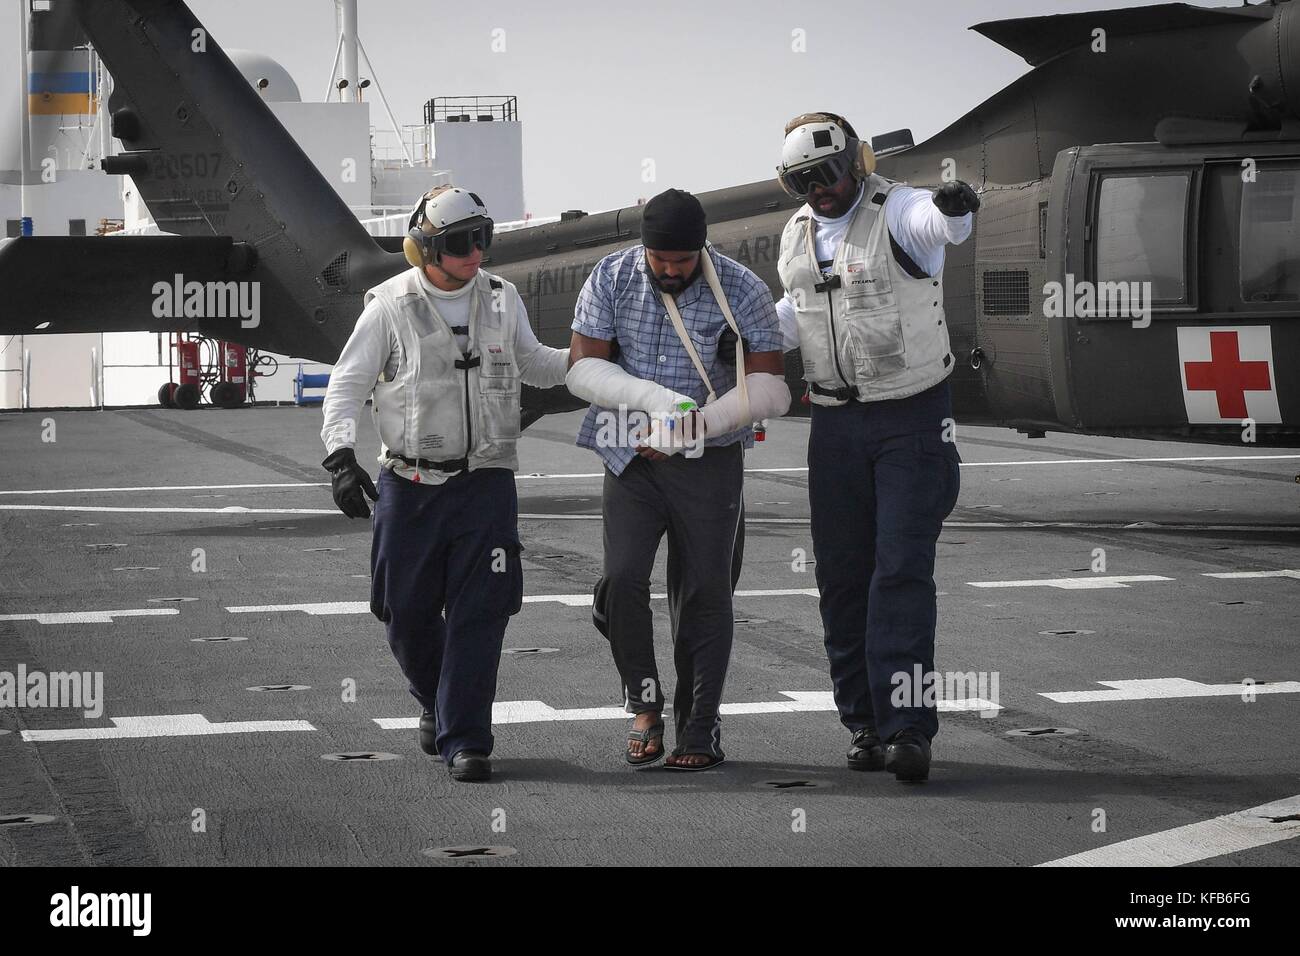 Us-Marine Seeleute an Bord der U.S. Navy mercy-Klasse Hospital Ship USNS Comfort escort Eine verletzte Puerto Rican Patienten während einer medizinischen Evakuierung im Gefolge von Hurrikan Maria 19. Oktober 2017 in das Karibische Meer. (Foto von Ernest r. Scott über planetpix) Stockfoto